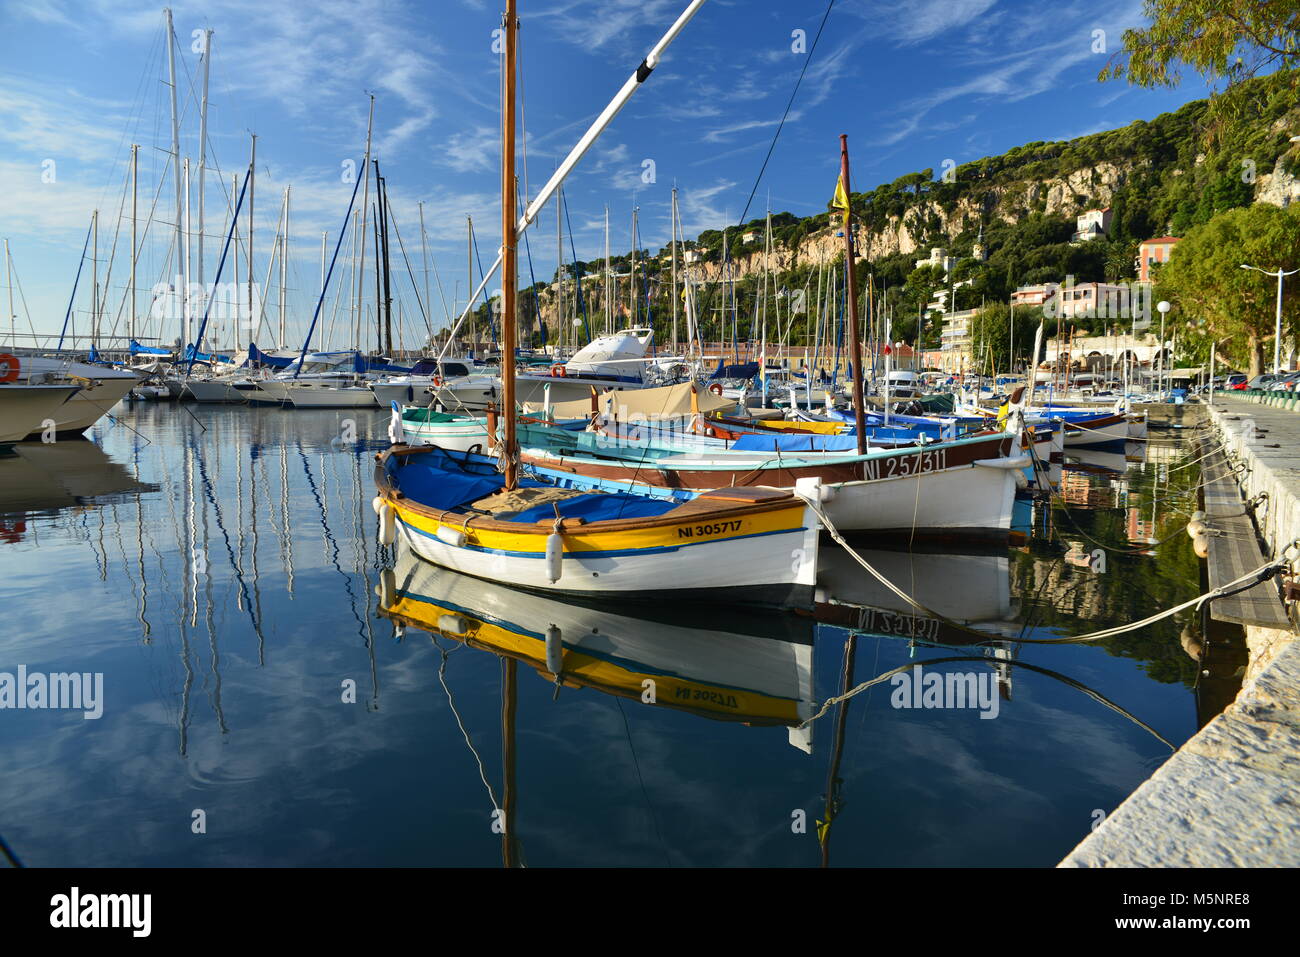 Imbarcazioni da pesca uniche nel vecchio porto di pescatori di Villefranche sur Mer, Nizza, nel sud della Francia Foto Stock